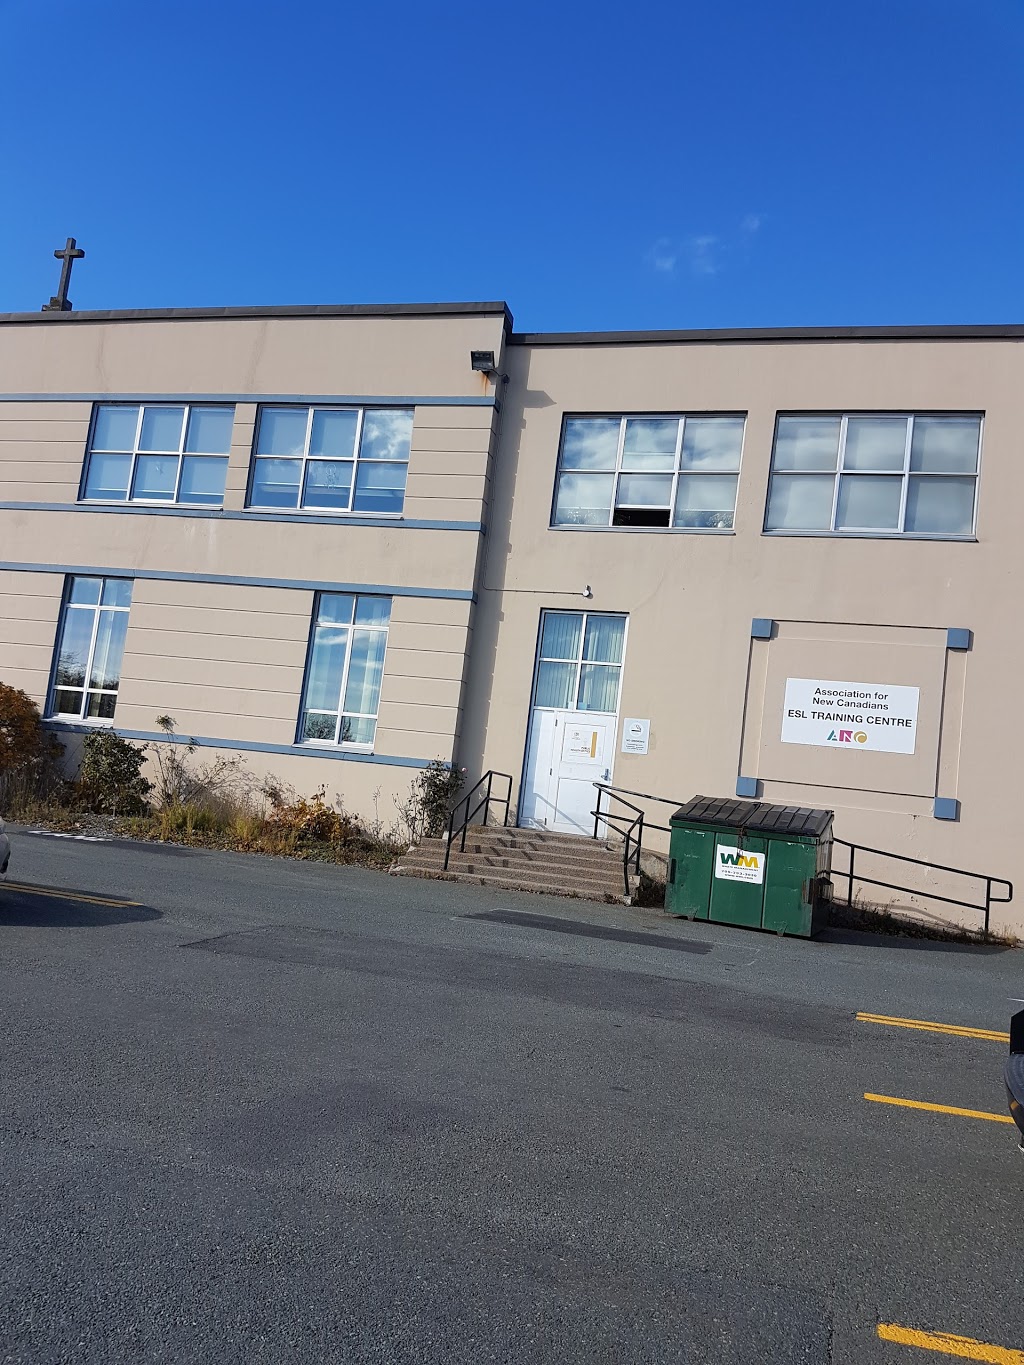 Rennies River Elementary | school | 150 Elizabeth Ave, St. Johns, NL A1B 1S4, Canada | 7097542690 OR +1 709-754-2690